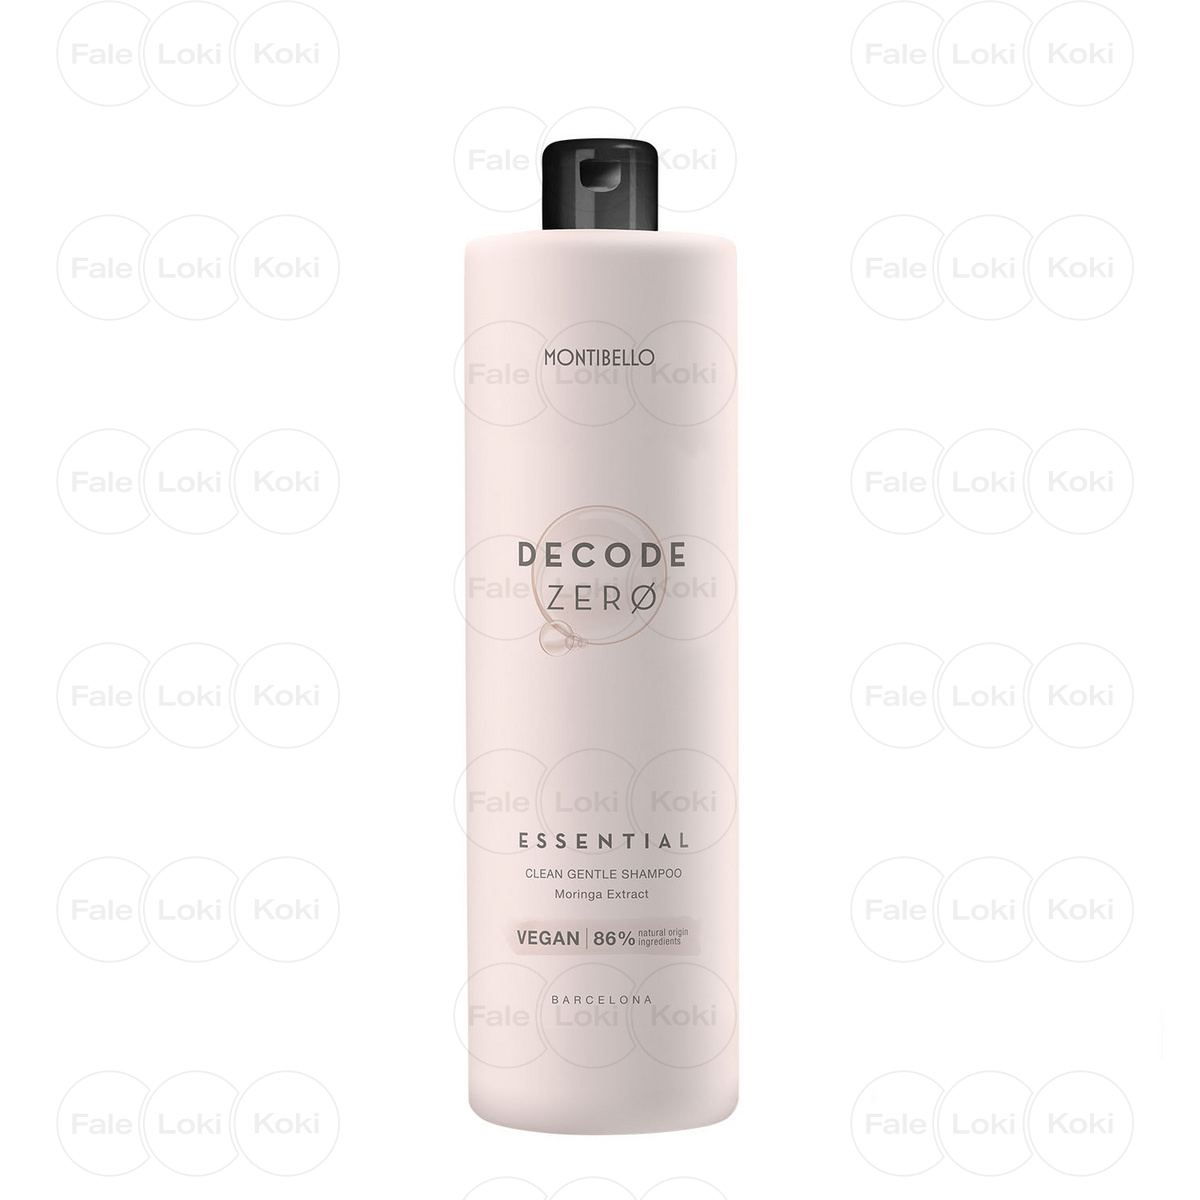 MONTIBELLO DECODE ZERO naturalny szampon do włosów Essential 1000 ml